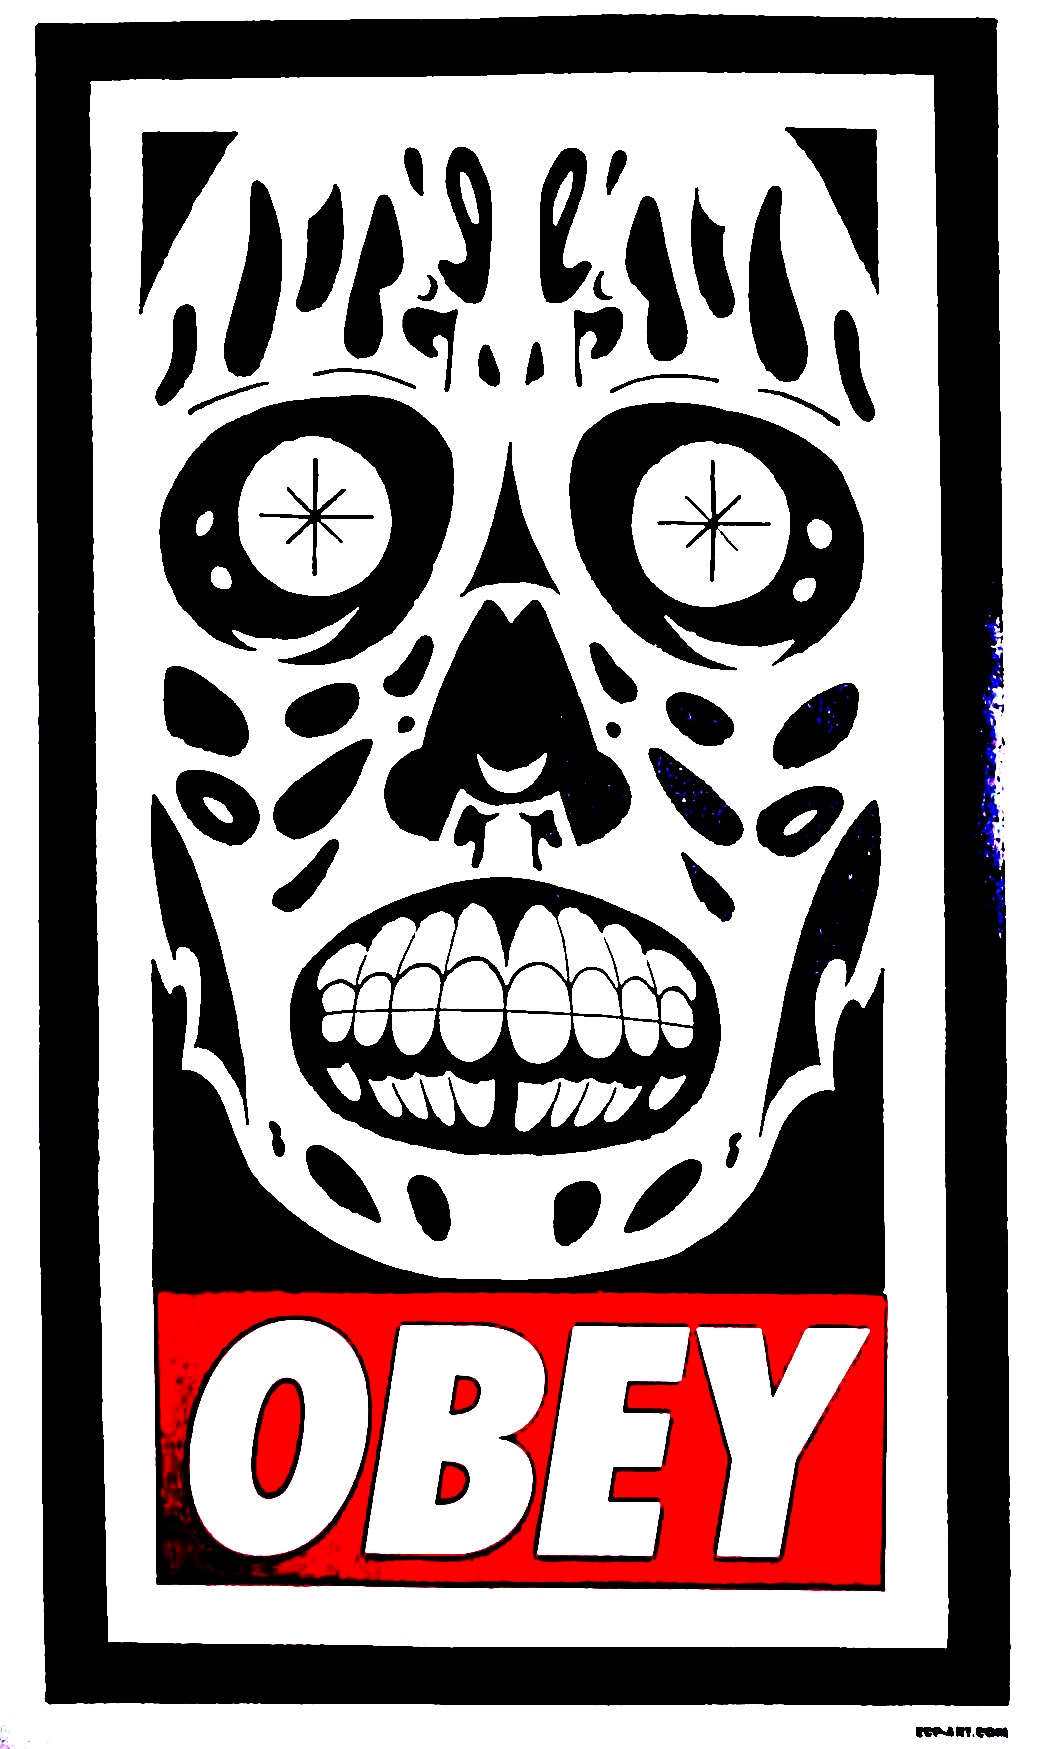 "Obey"